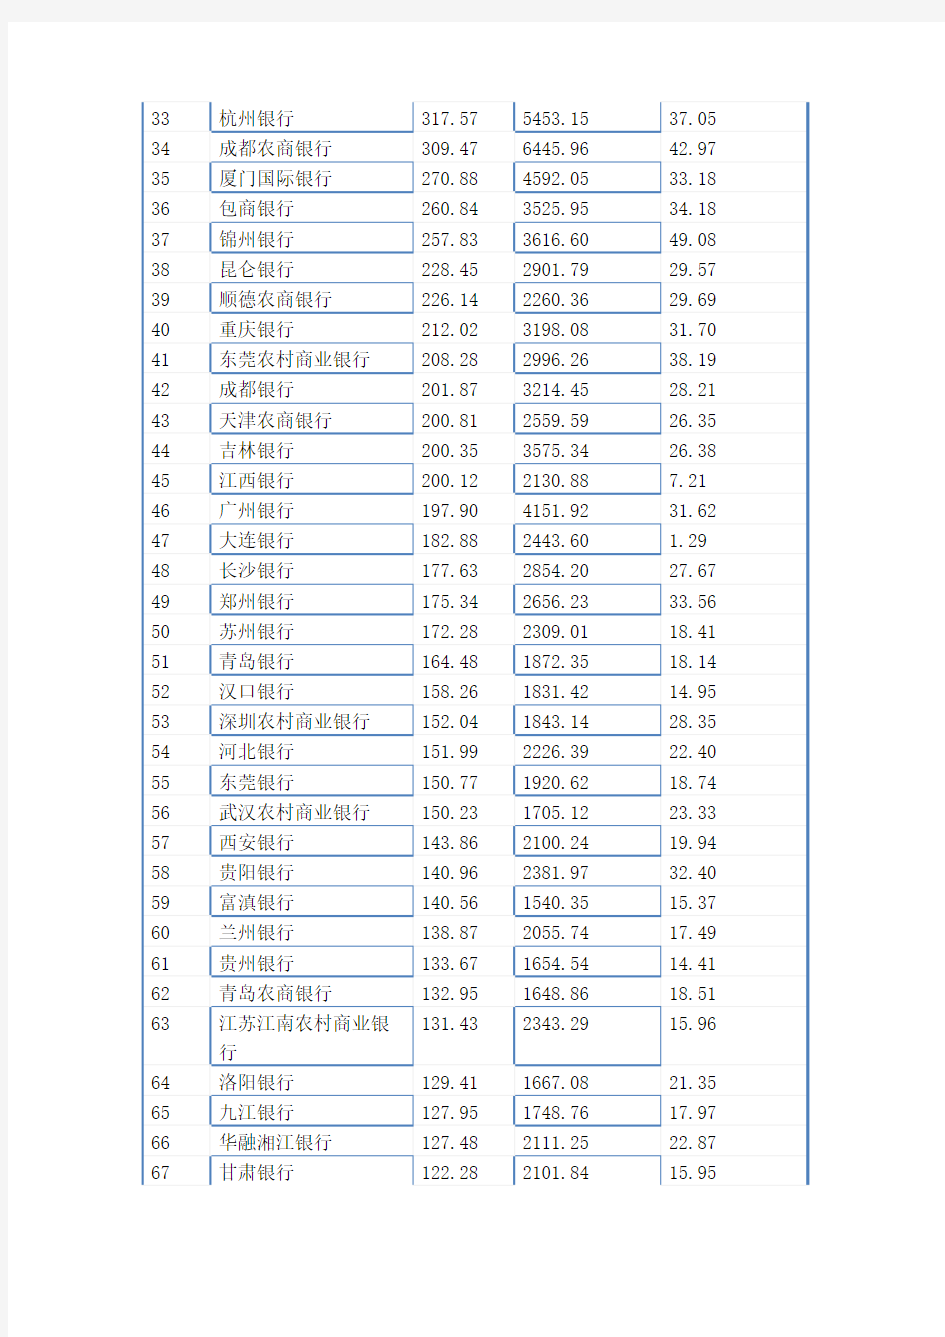 2016年中国前100家银行排名(以核心一级资本净额排序)